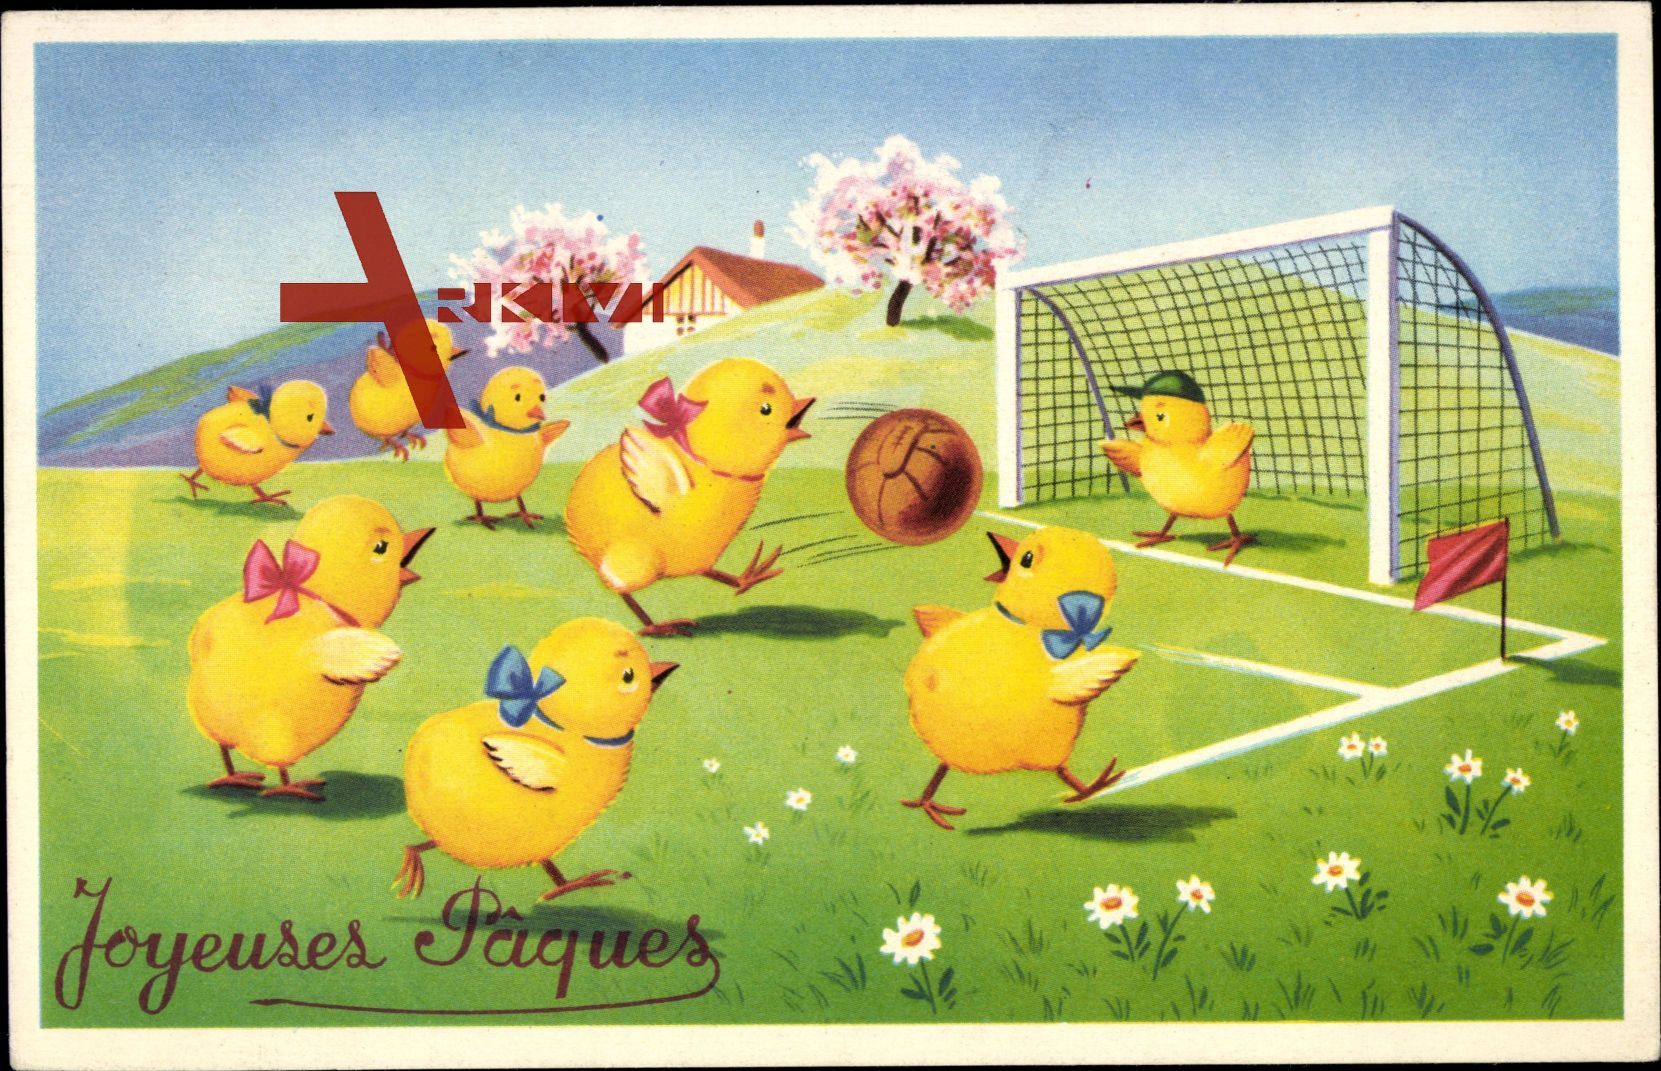 Glückwunsch Ostern, Joyeuses Paques, Küken spielen Fußball